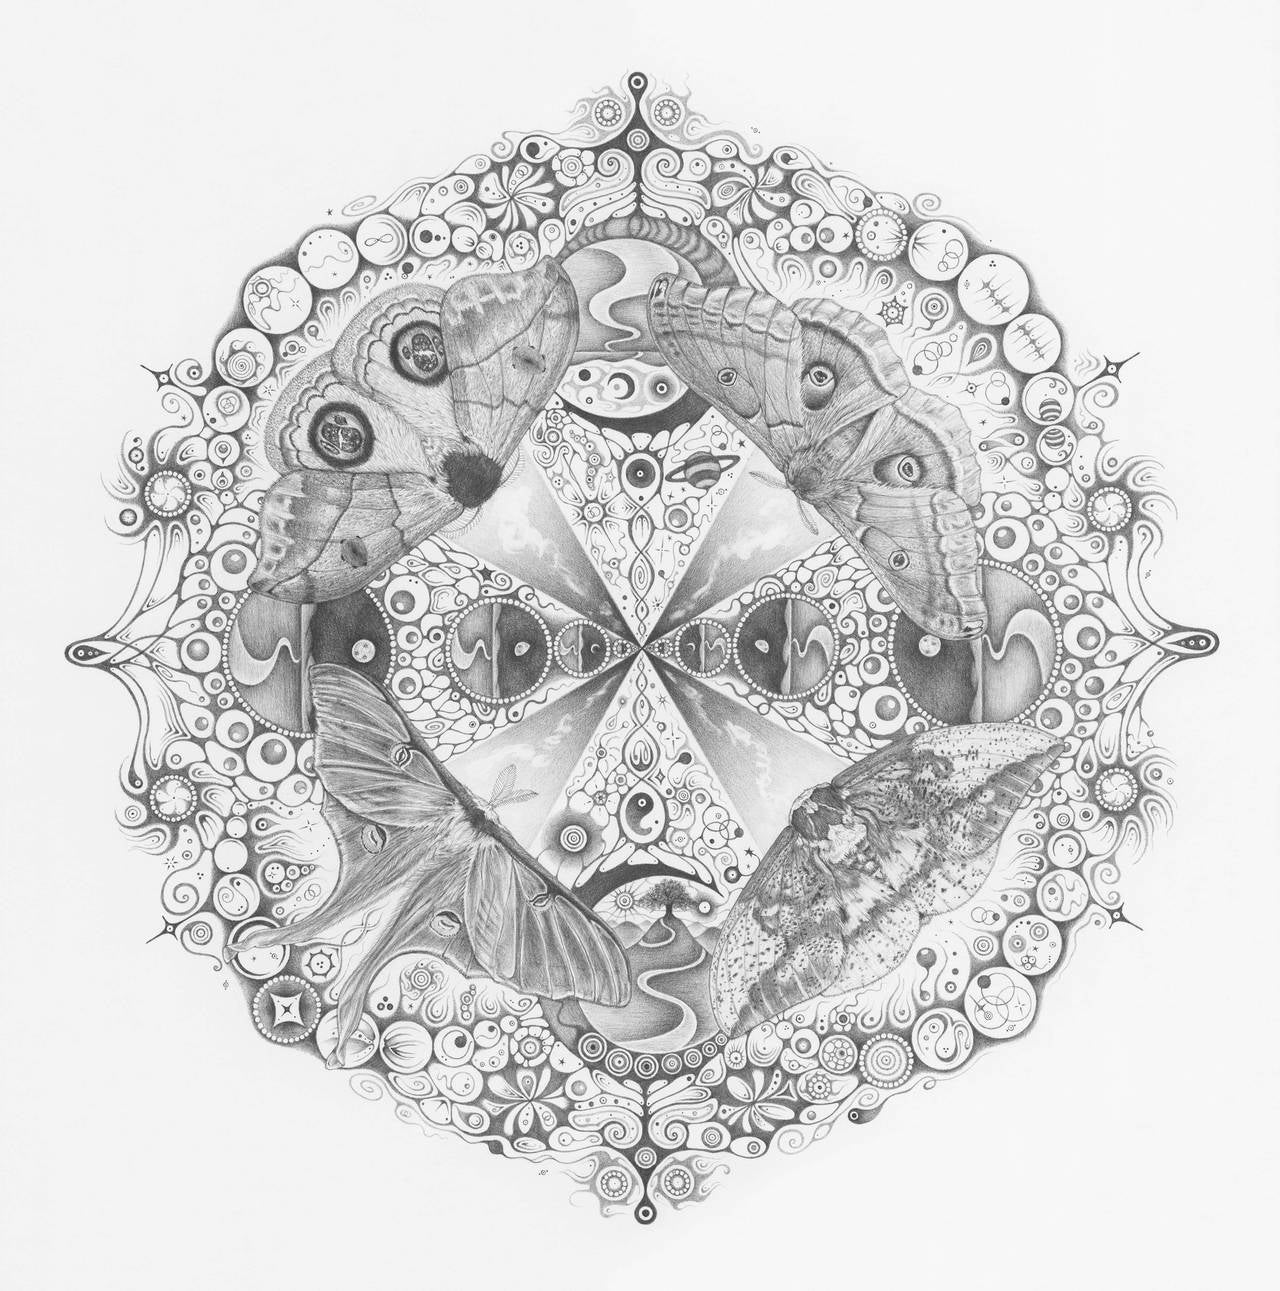 Michiyo Ihara Animal Art - Snowflakes 139 Companions, Moths, Planets, Patterns, Mandala Pencil Drawing